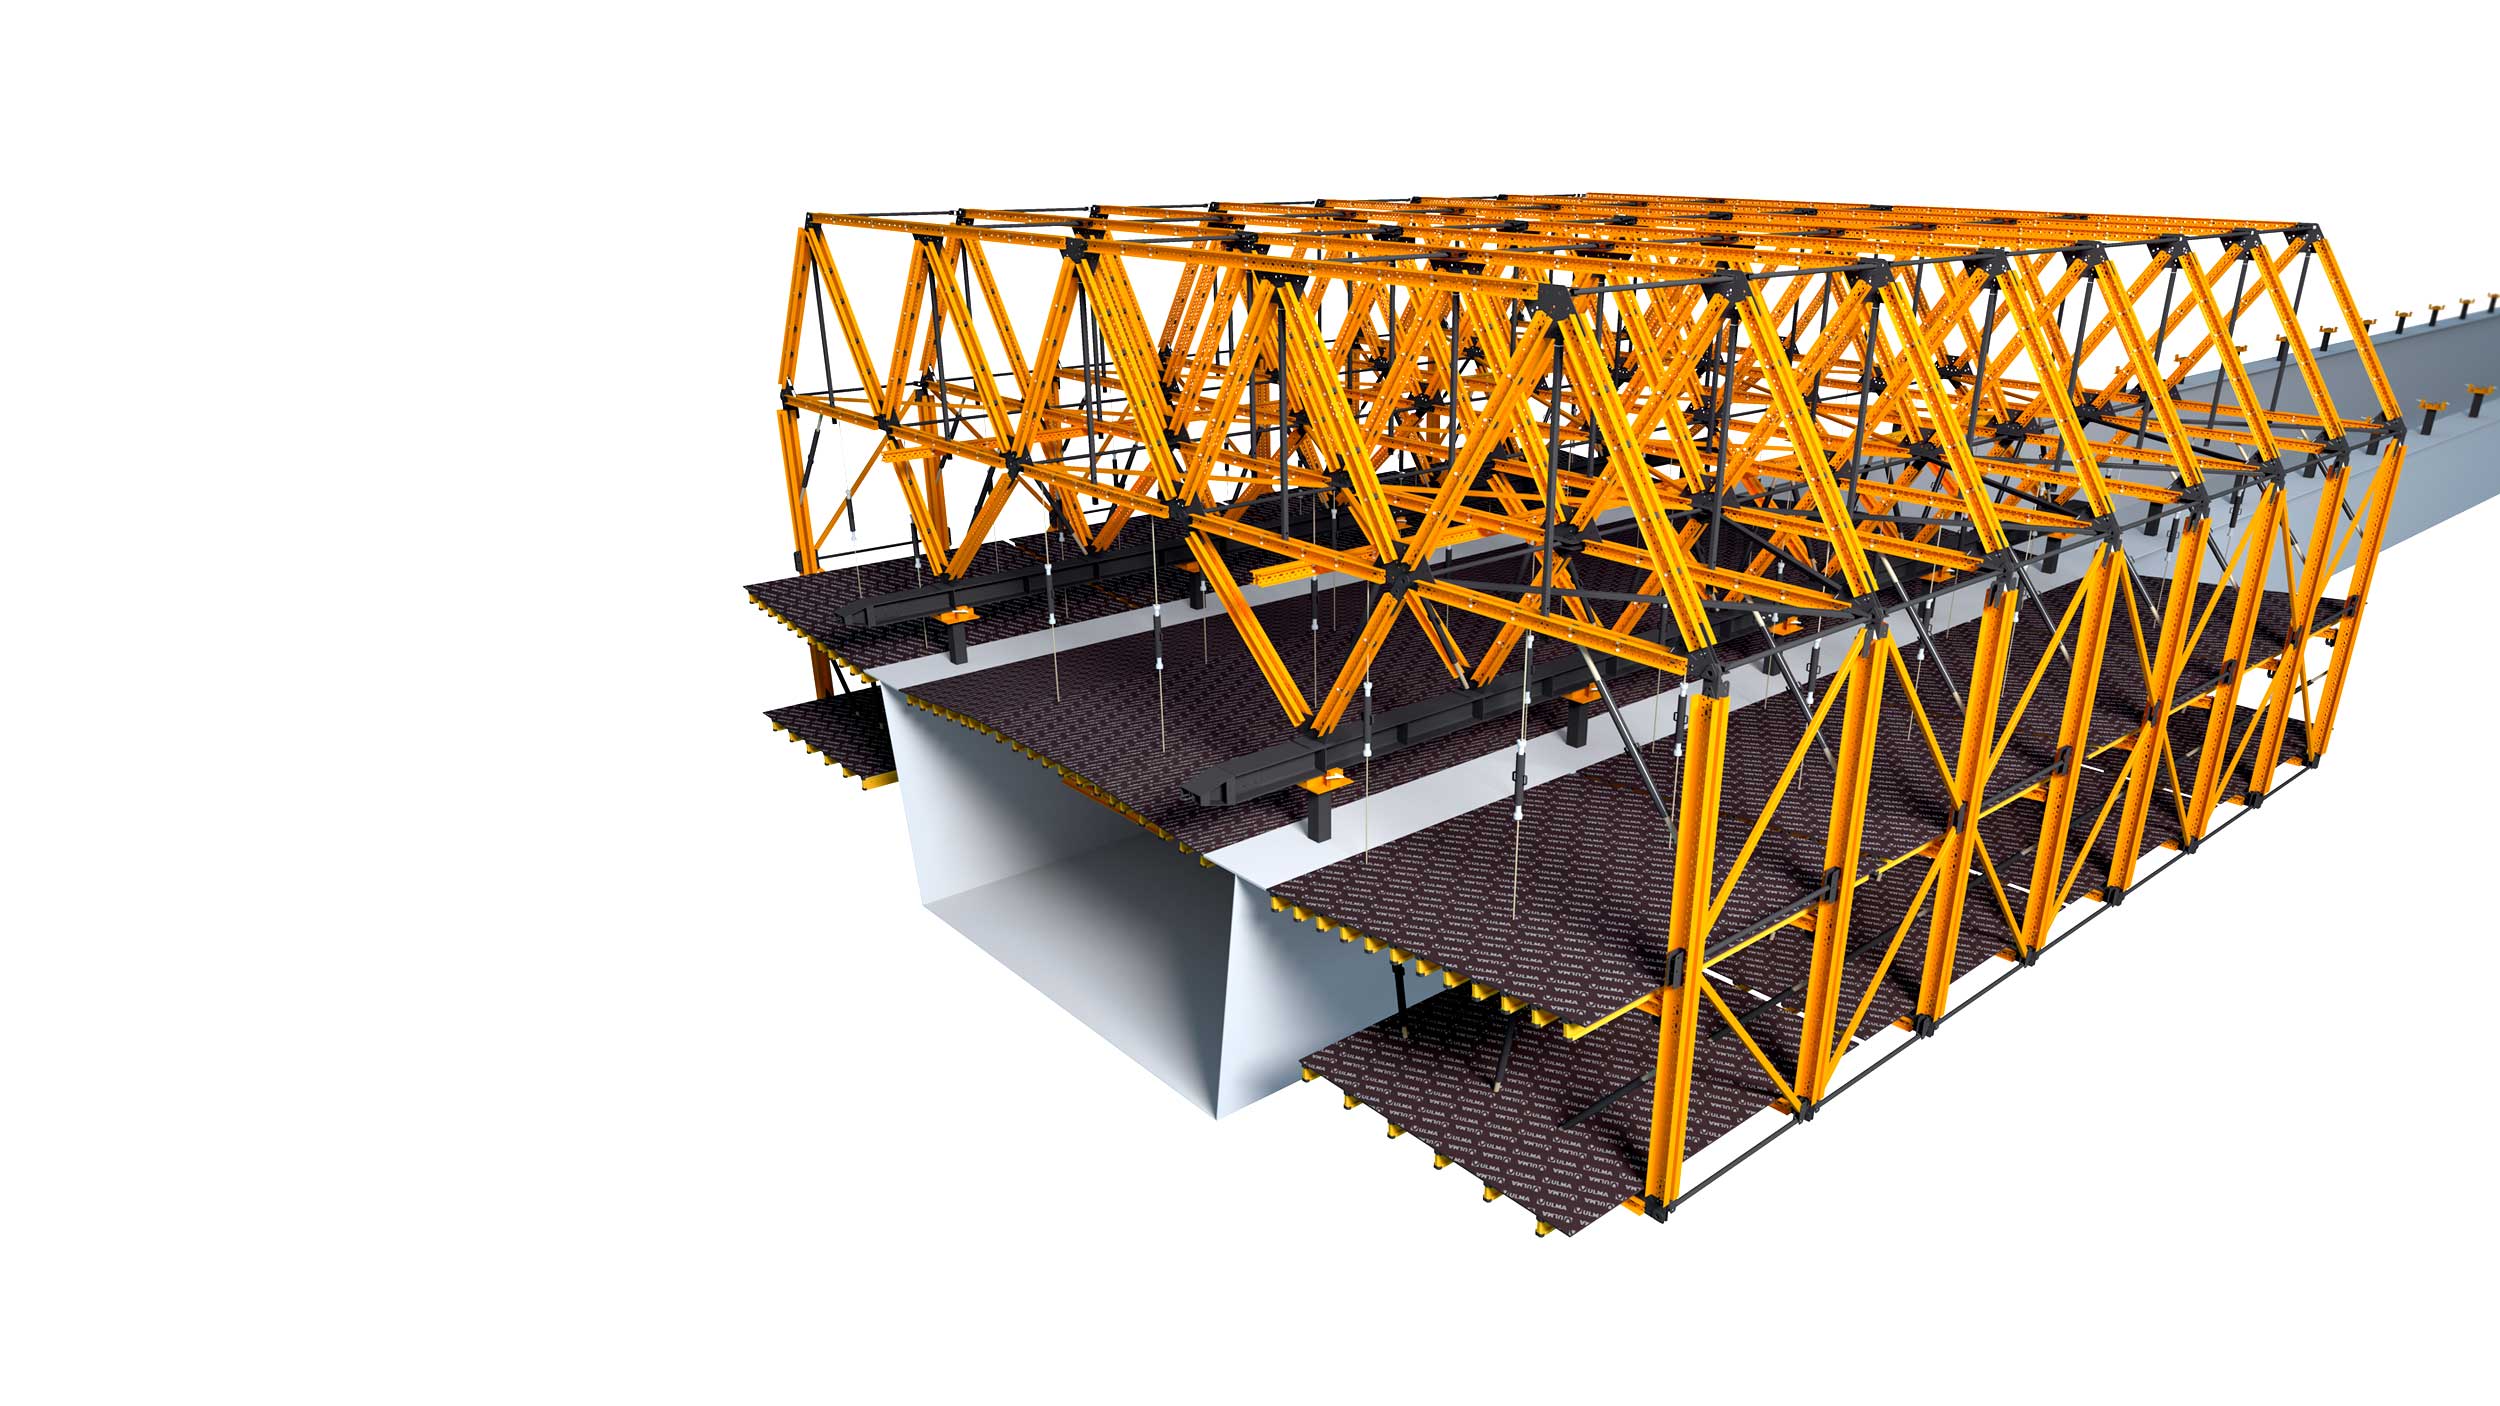 Carro de voladizos para puentes mixtos y puentes de concreto parcialmente prefabricados. Características destacables: configurable para cada proyecto. Agiliza los ritmos de ejecución.